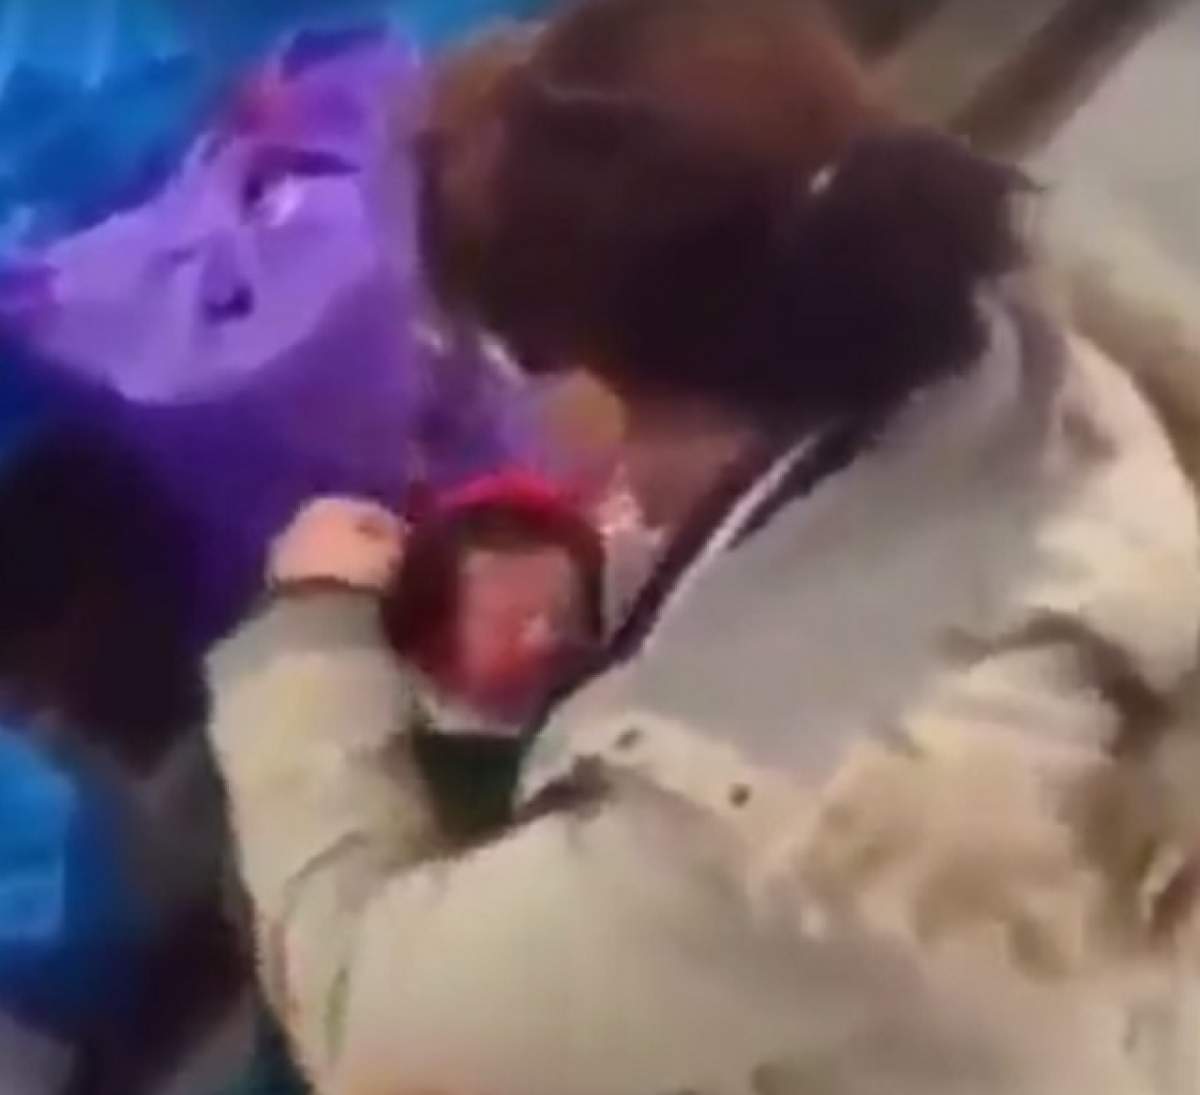 ŞOCANT! O femeie îşi bate CRUNT bebeluşul! VIDEO cu un PUTERNIC IMPACT EMOŢIONAL!